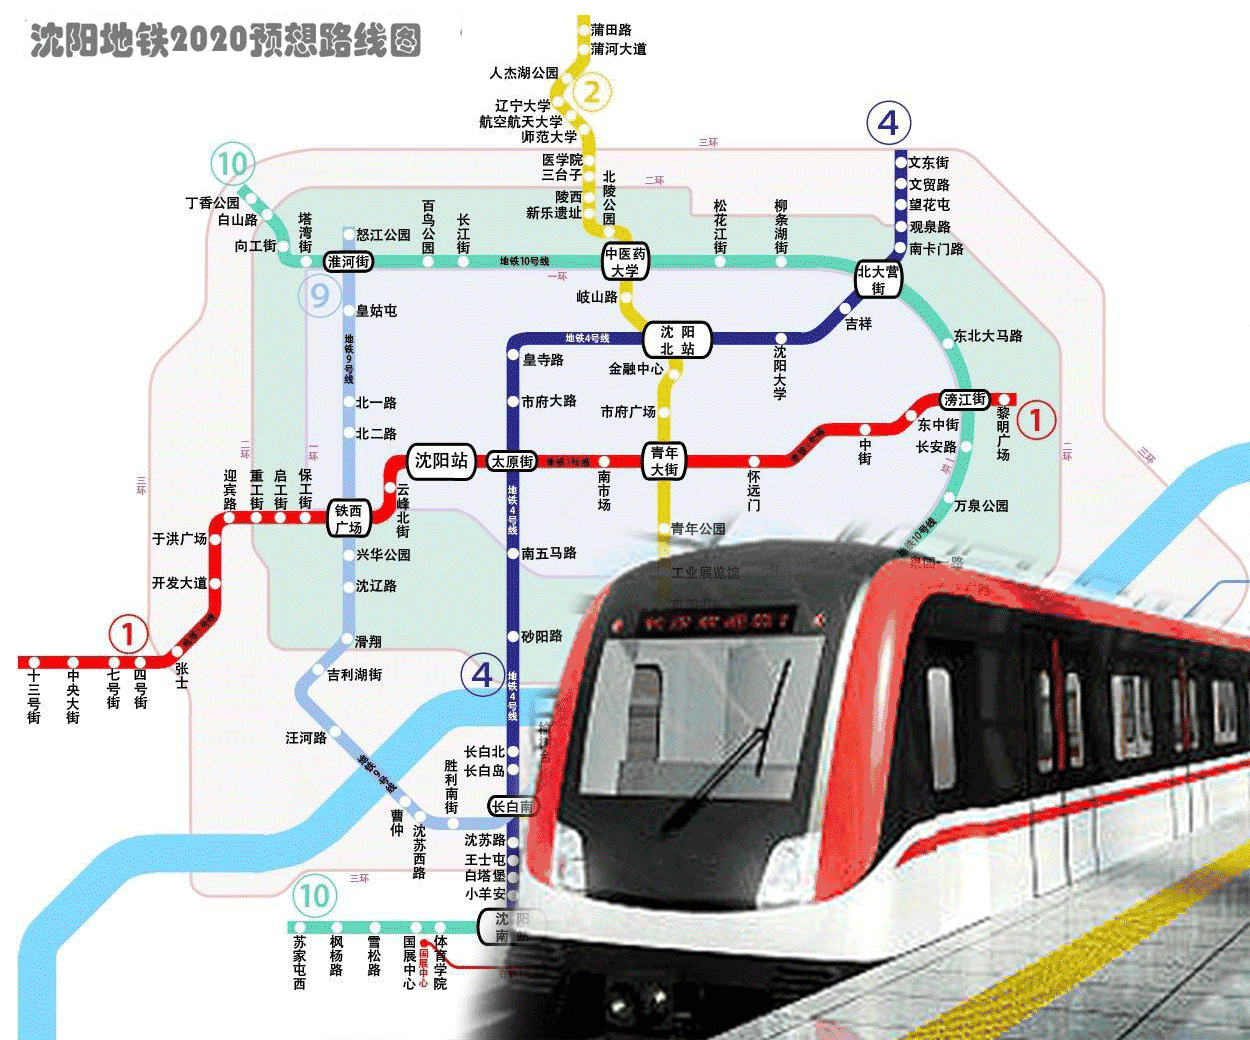 生活丨今起地铁二号线北延线空载试运行预计3个月后载客试运营